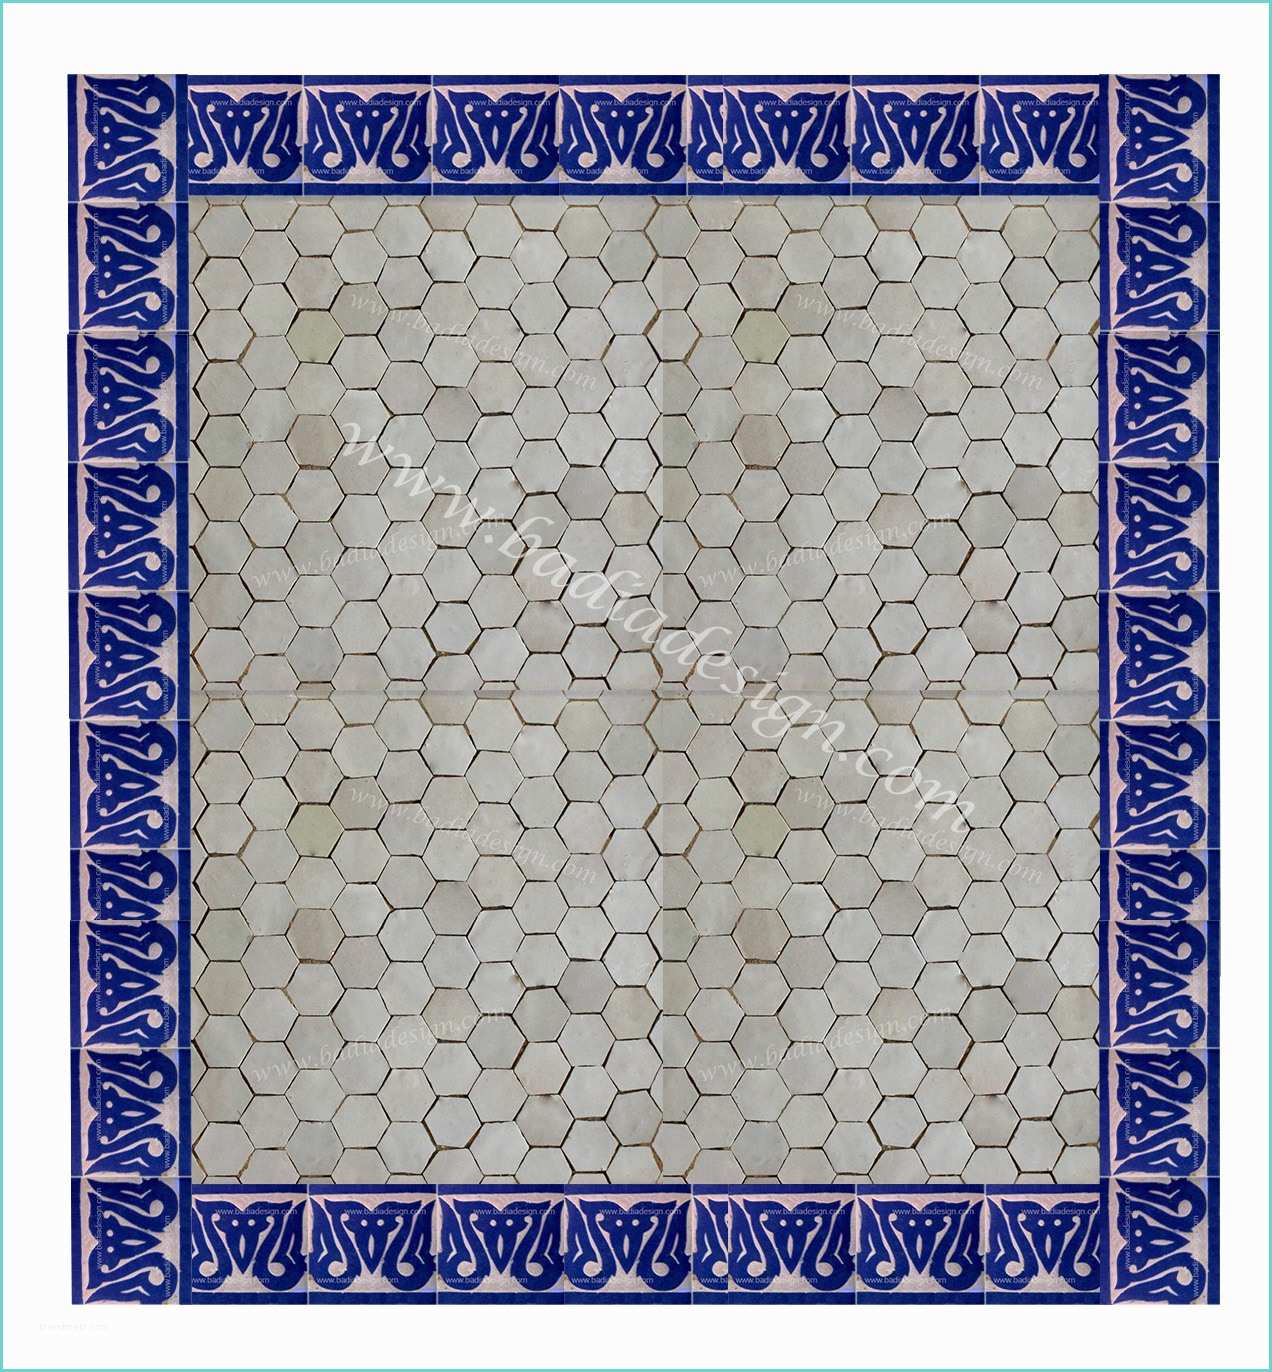 Morroccan Floor Tiles Moroccan Tile Design Ideas Los Angeles